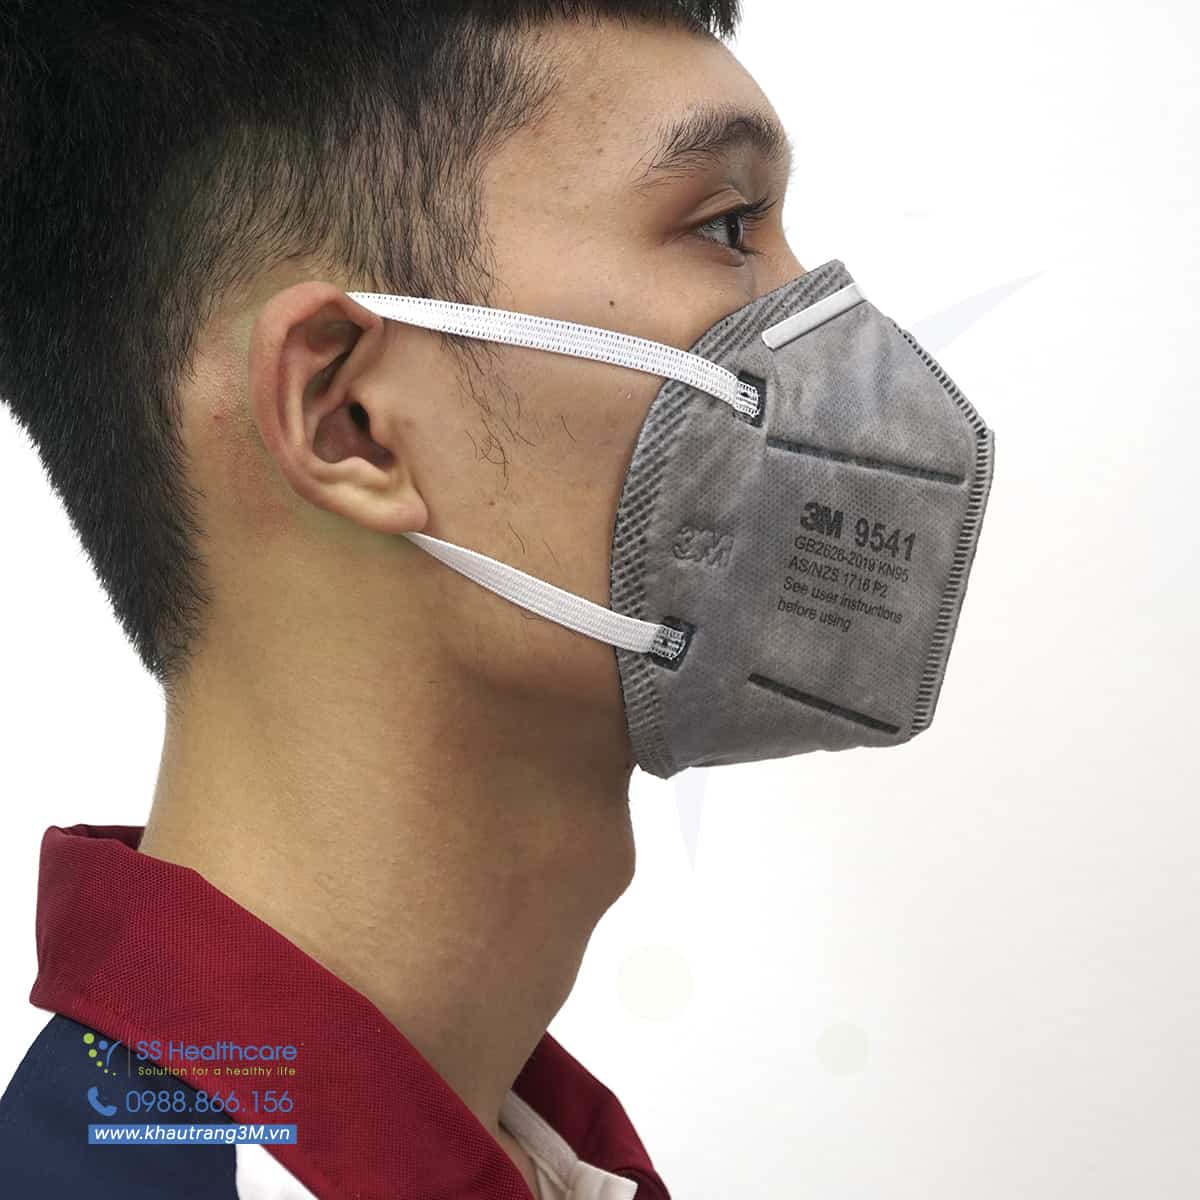 Tầm quan trọng của khẩu trang 3M 9541 trong việc bảo vệ hô hấp là gì?
